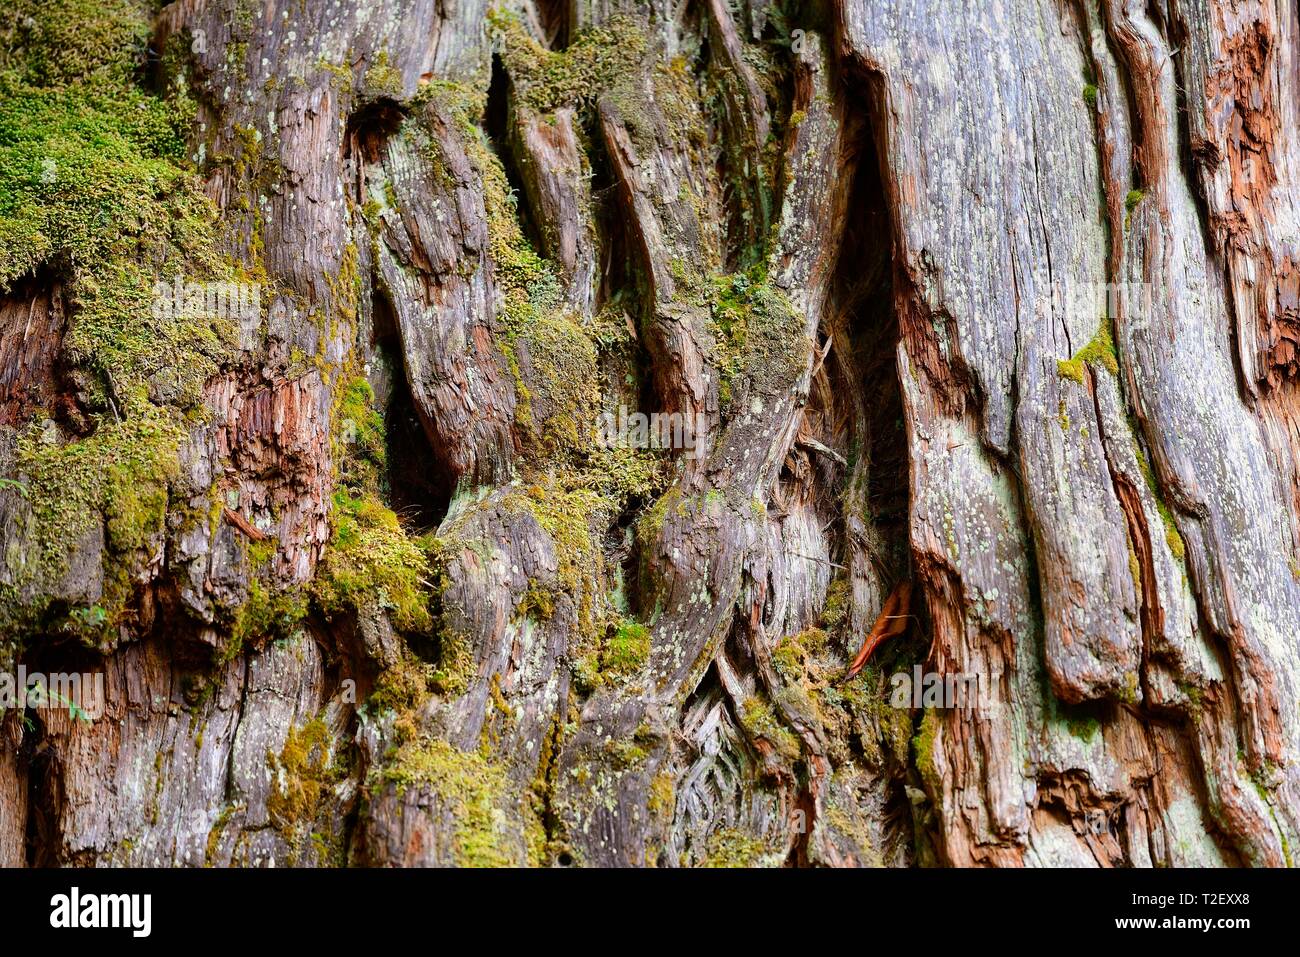 Fitzroya (Fitzroya cupressoides), tree bark, Parque Pumalin, Region de los Lagos, Chile Stock Photo